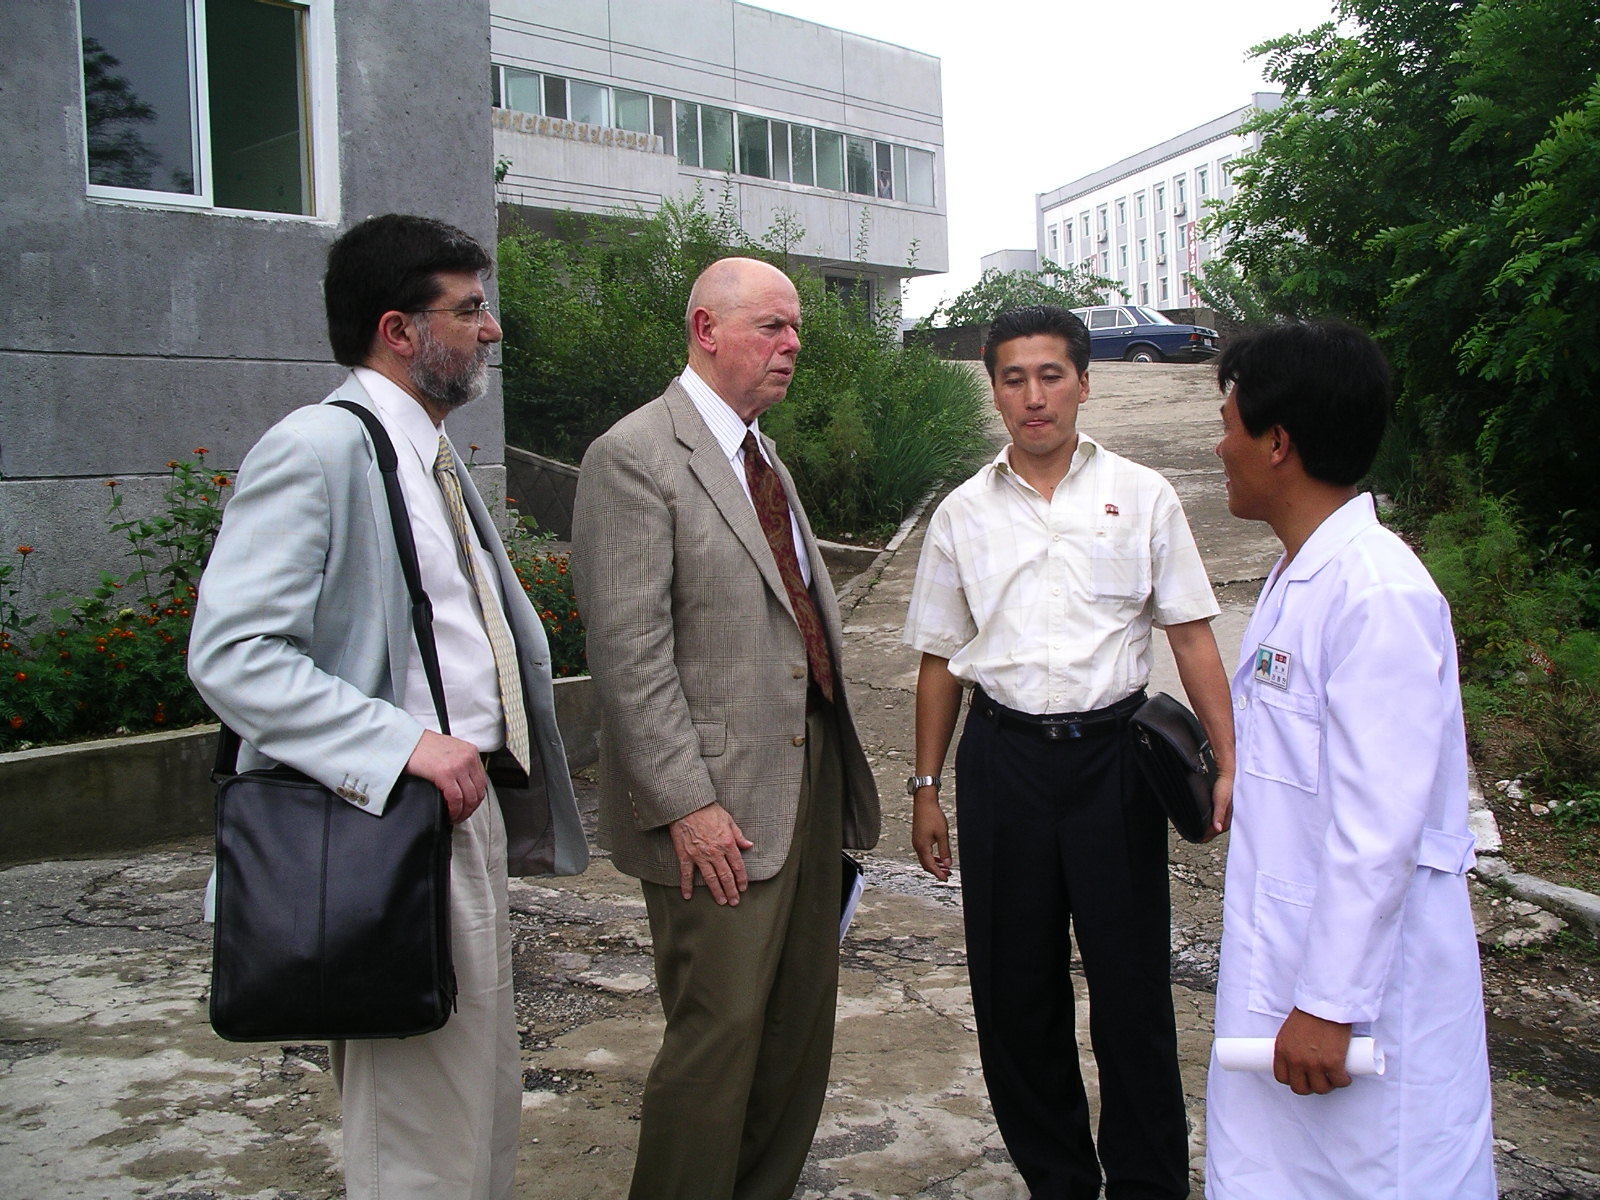 Four men talking outside a gray concrete building